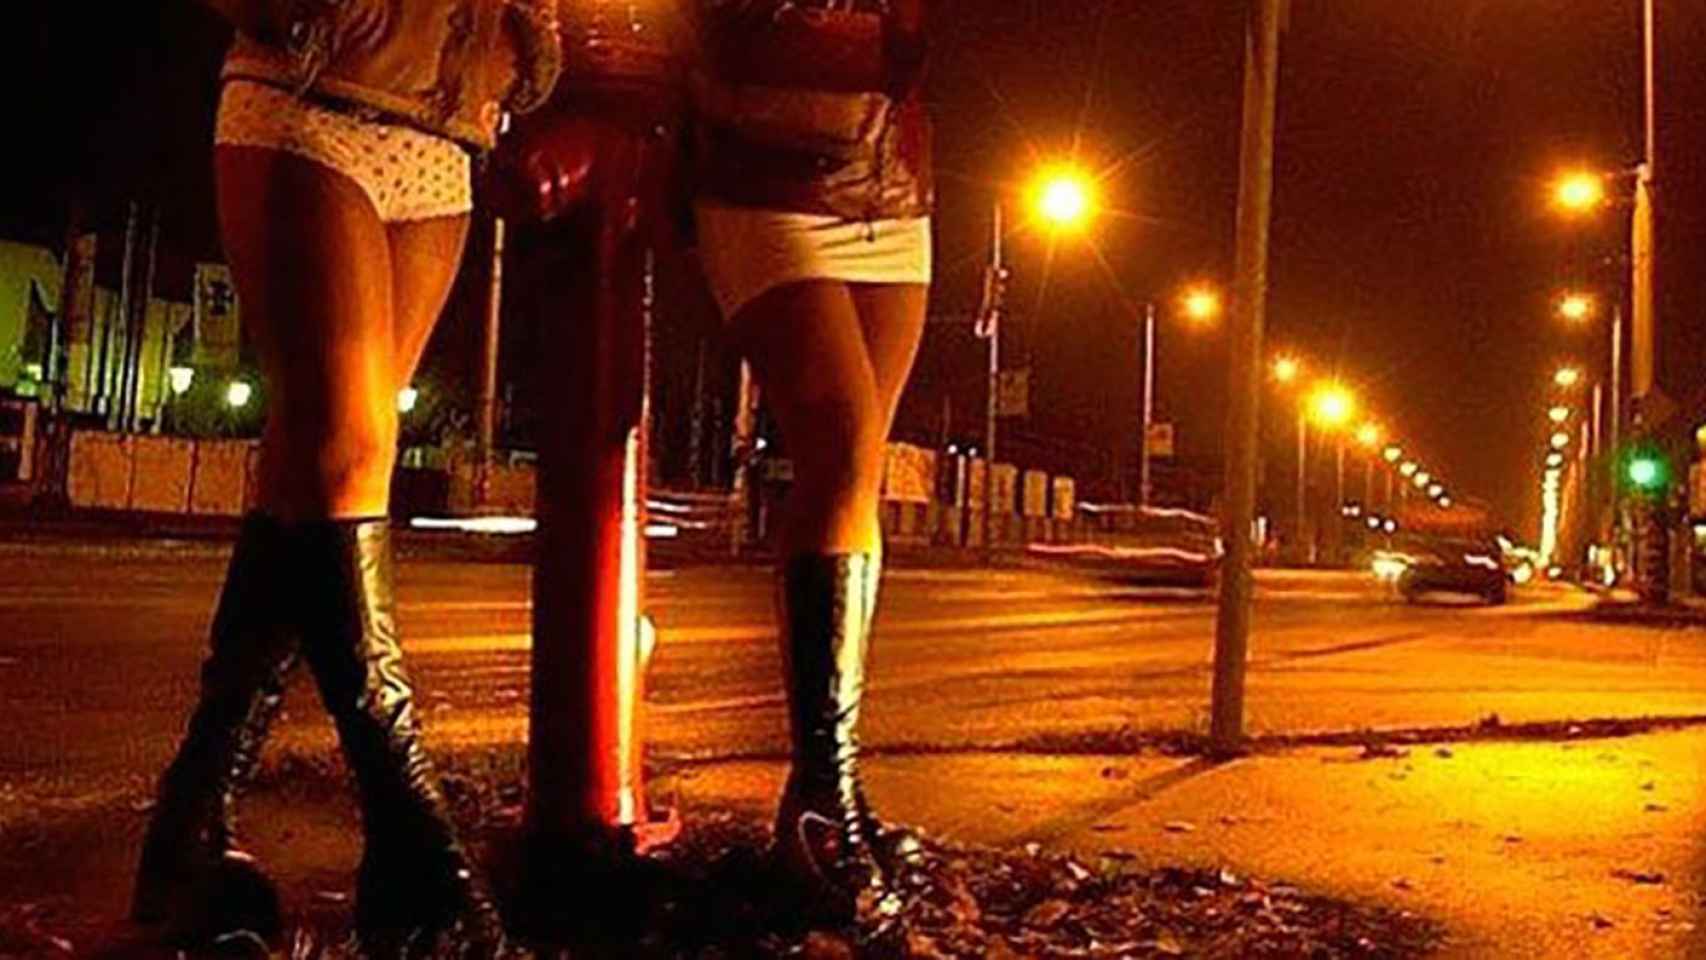 Dos prostitutas esperan la llegada de posibles clientes en las calles de Barcelona